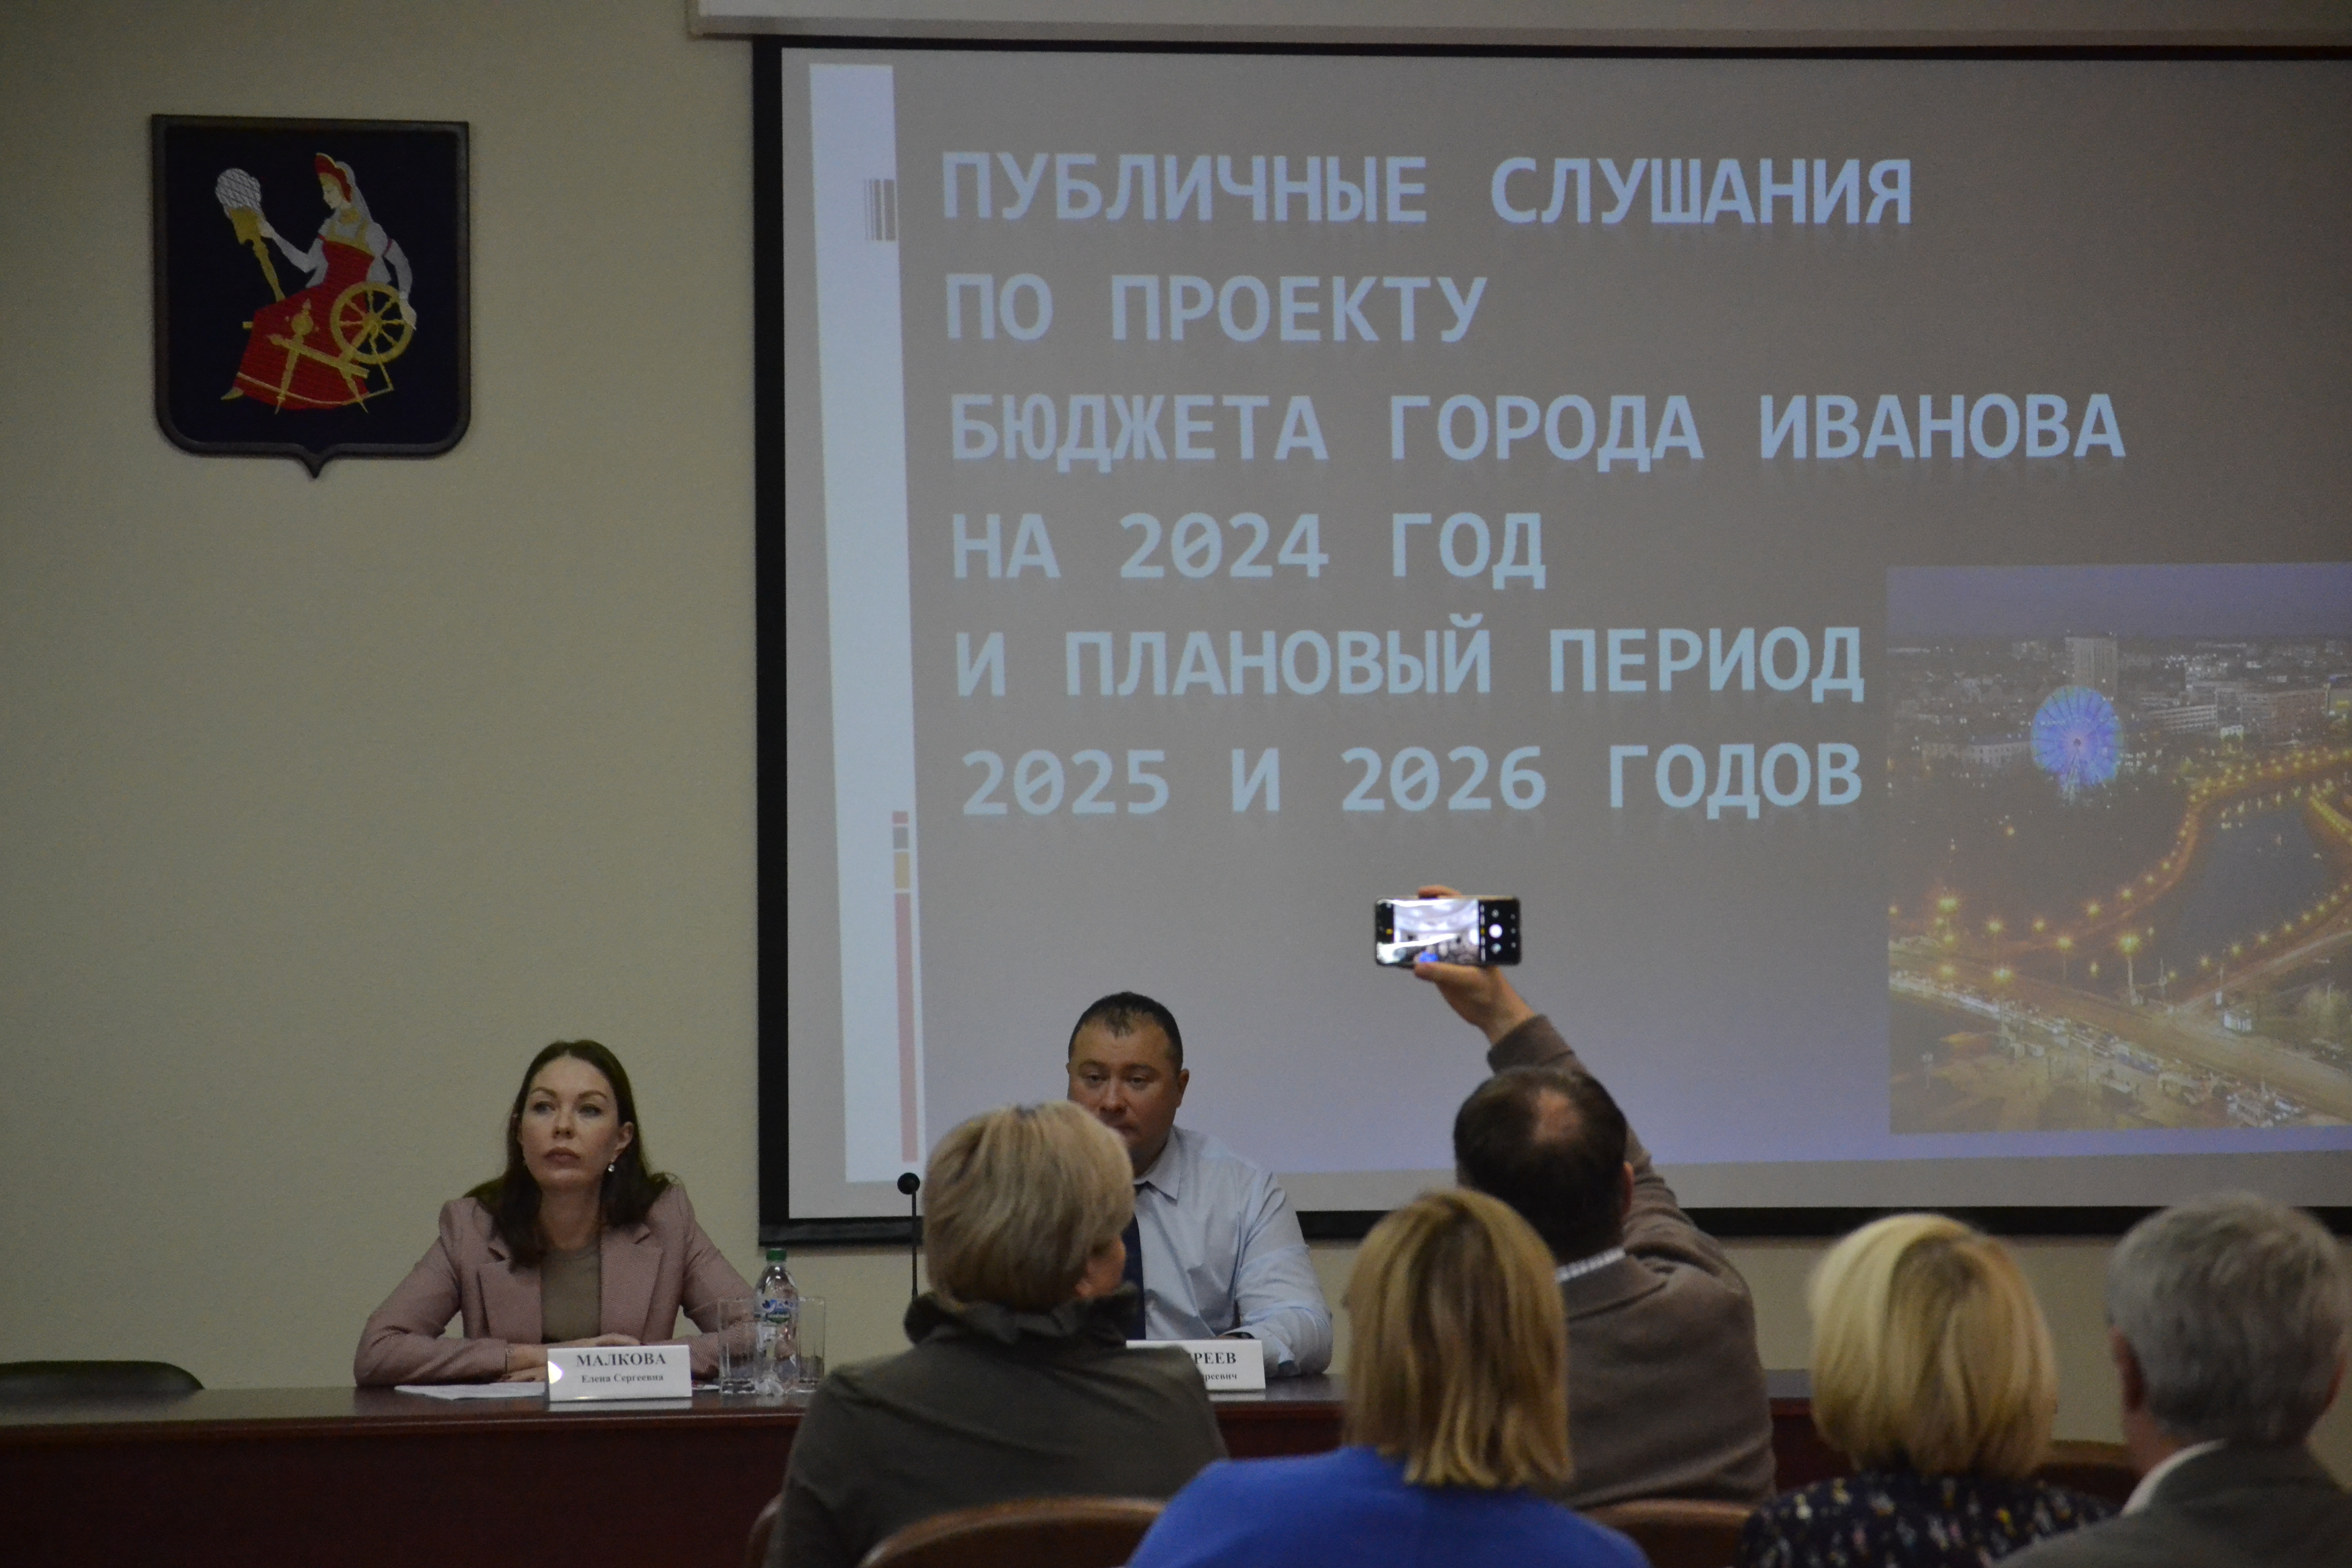 Состоялись публичные слушания по проекту бюджета города Иванова на 2024 год и плановый период 2025 и 2026 годов.